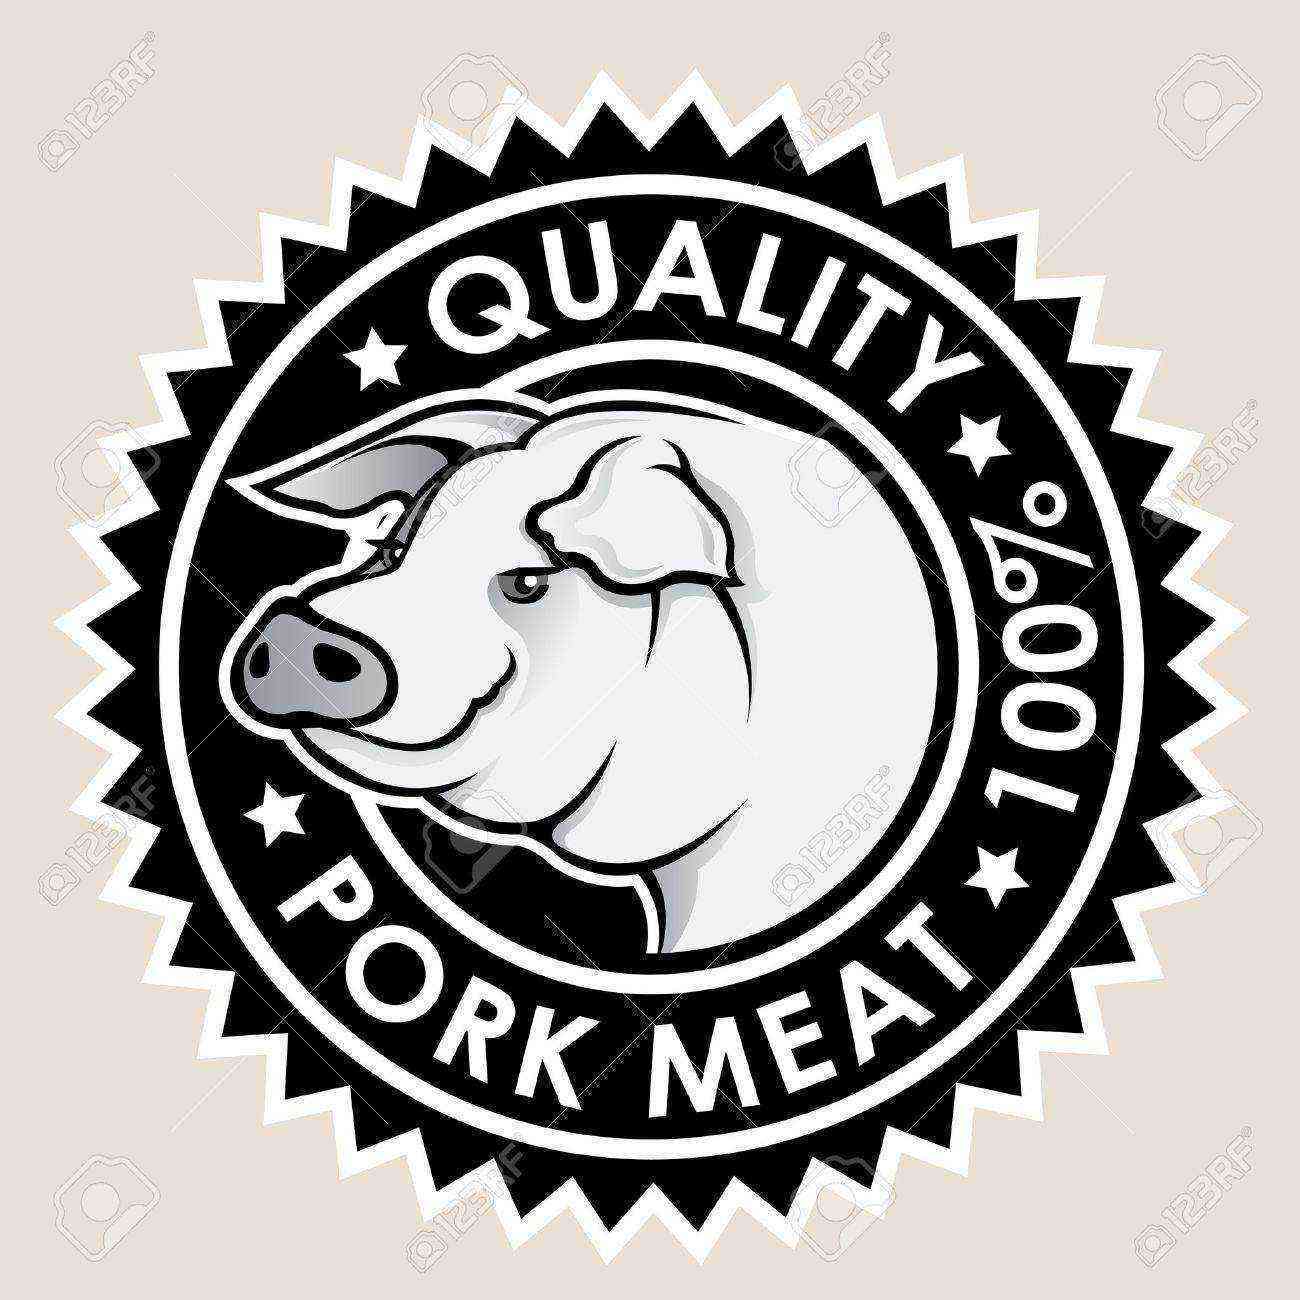 Pork quality